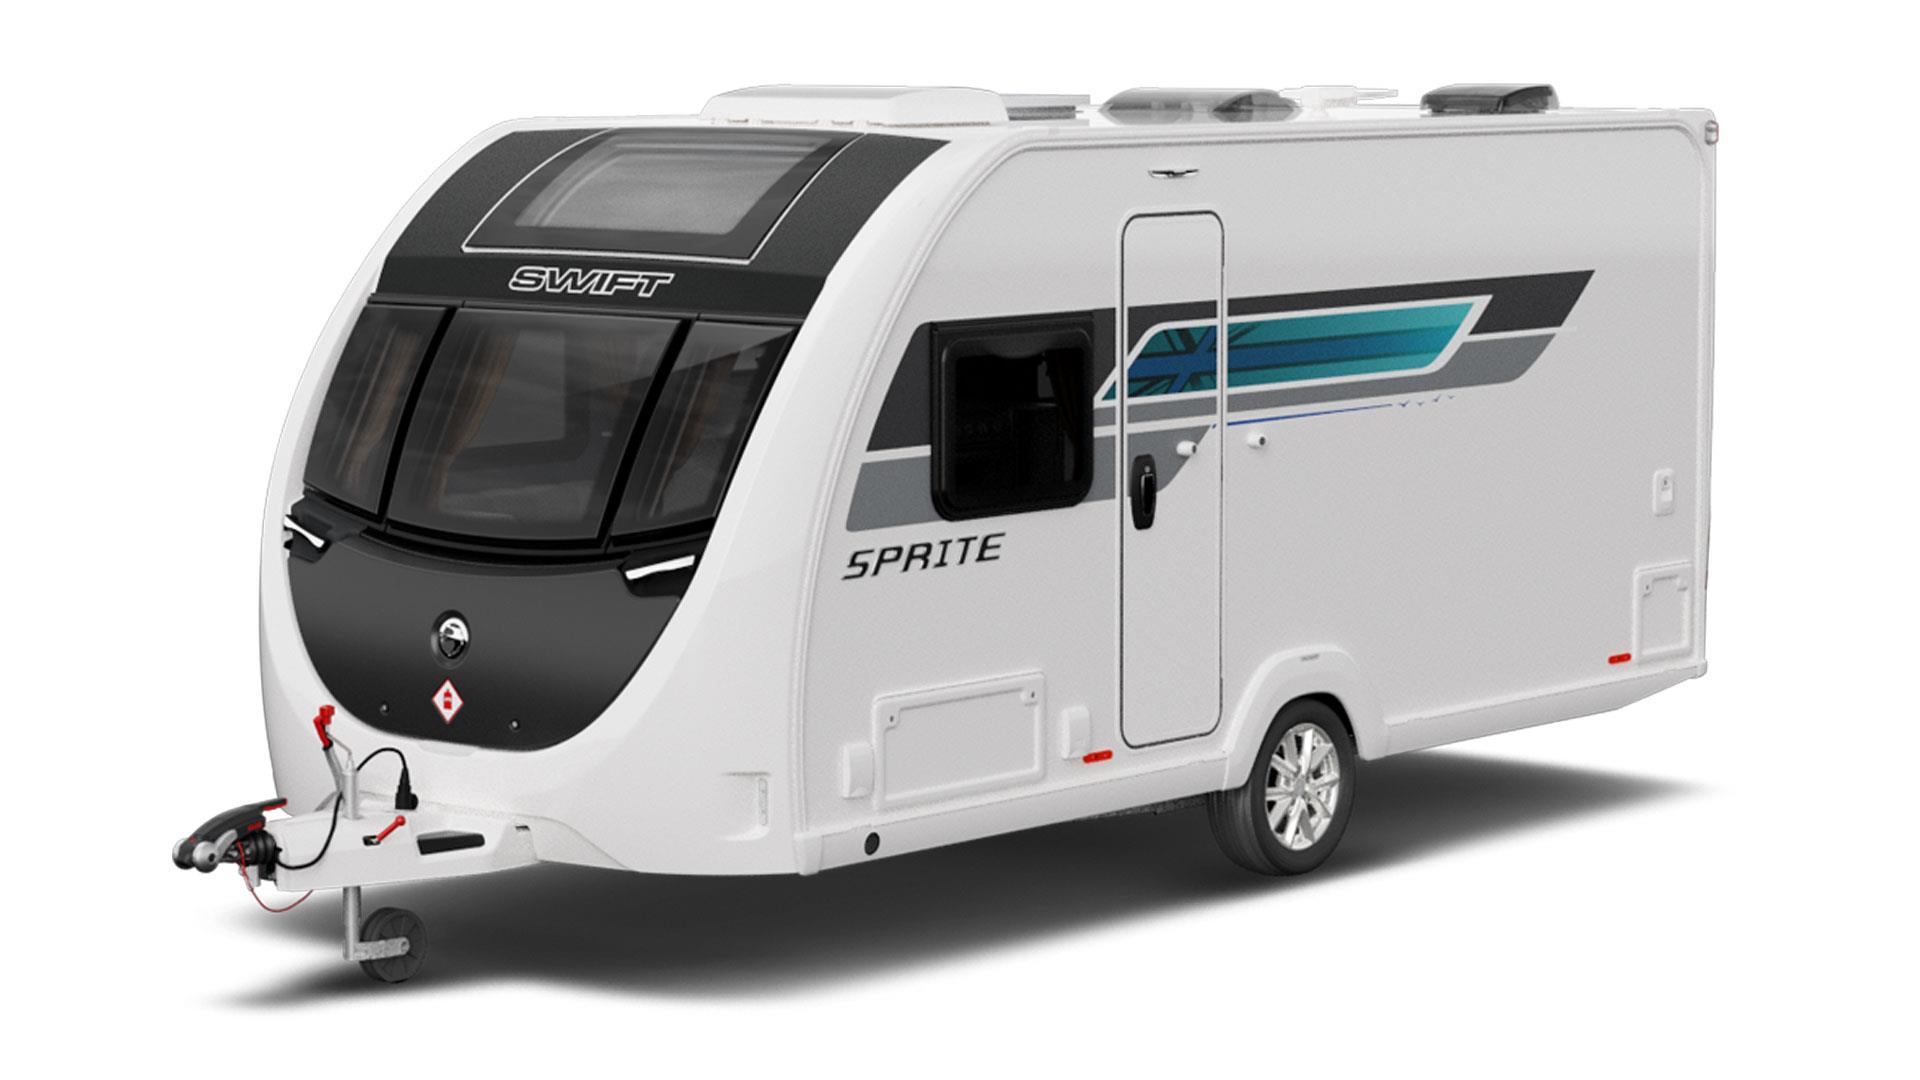 Swift Sprite Caravan